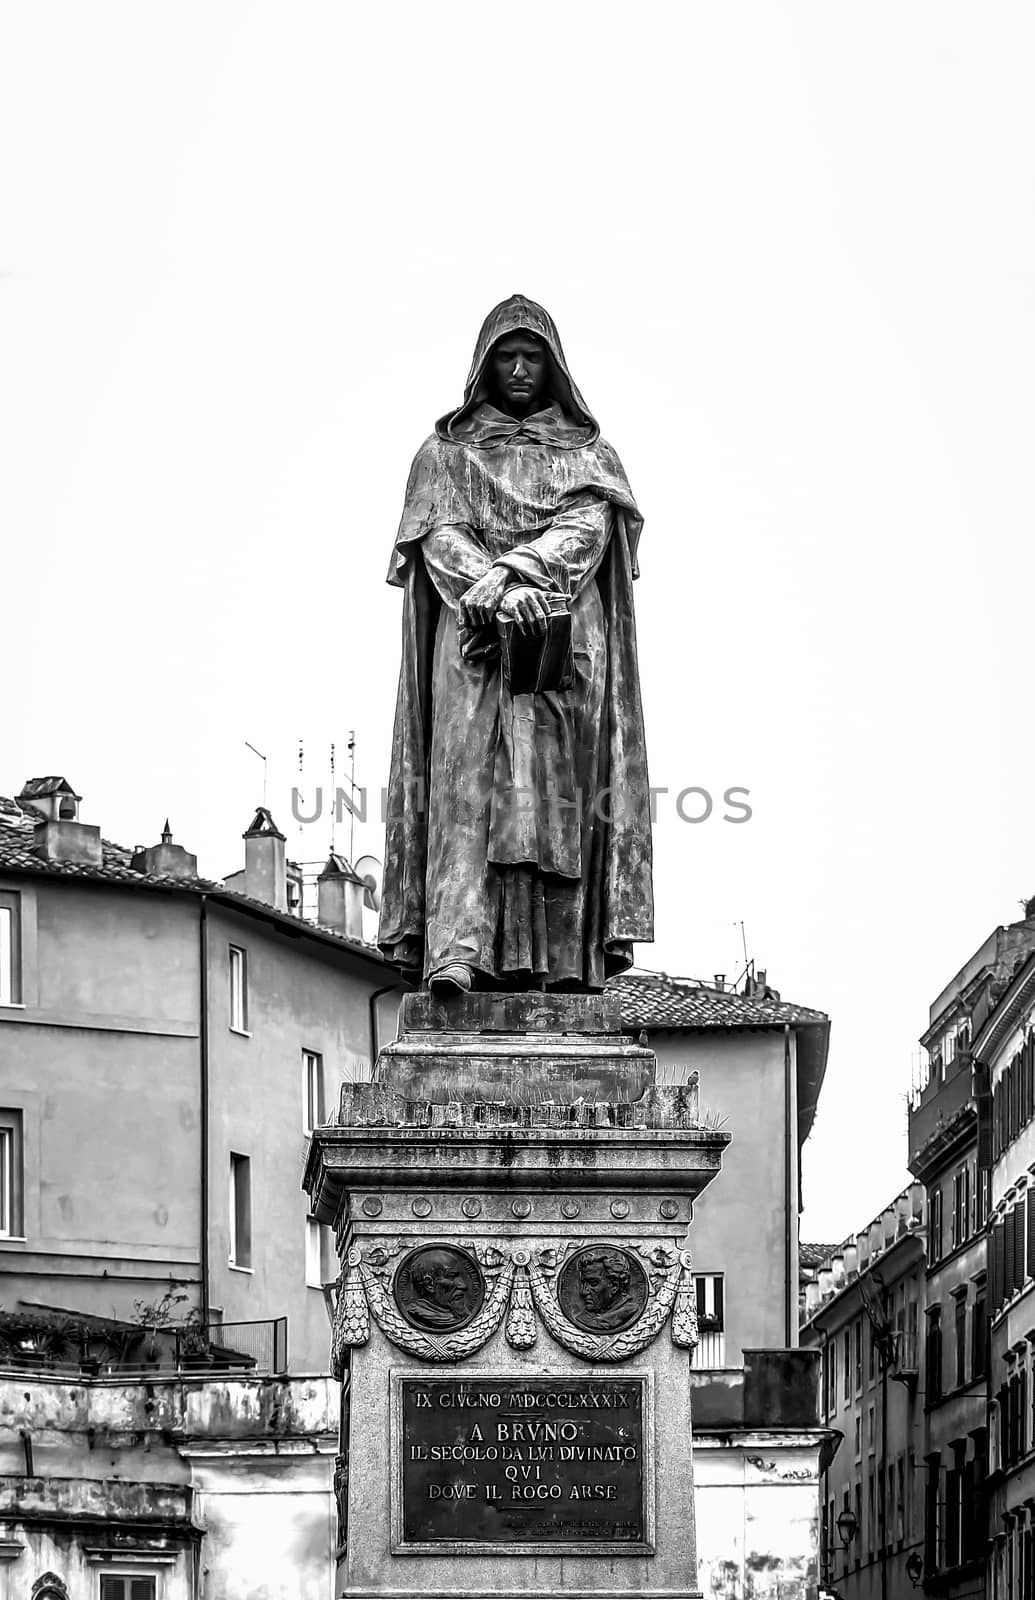 The bronze statue of philosopher Giordano Bruno in Rome by rarrarorro